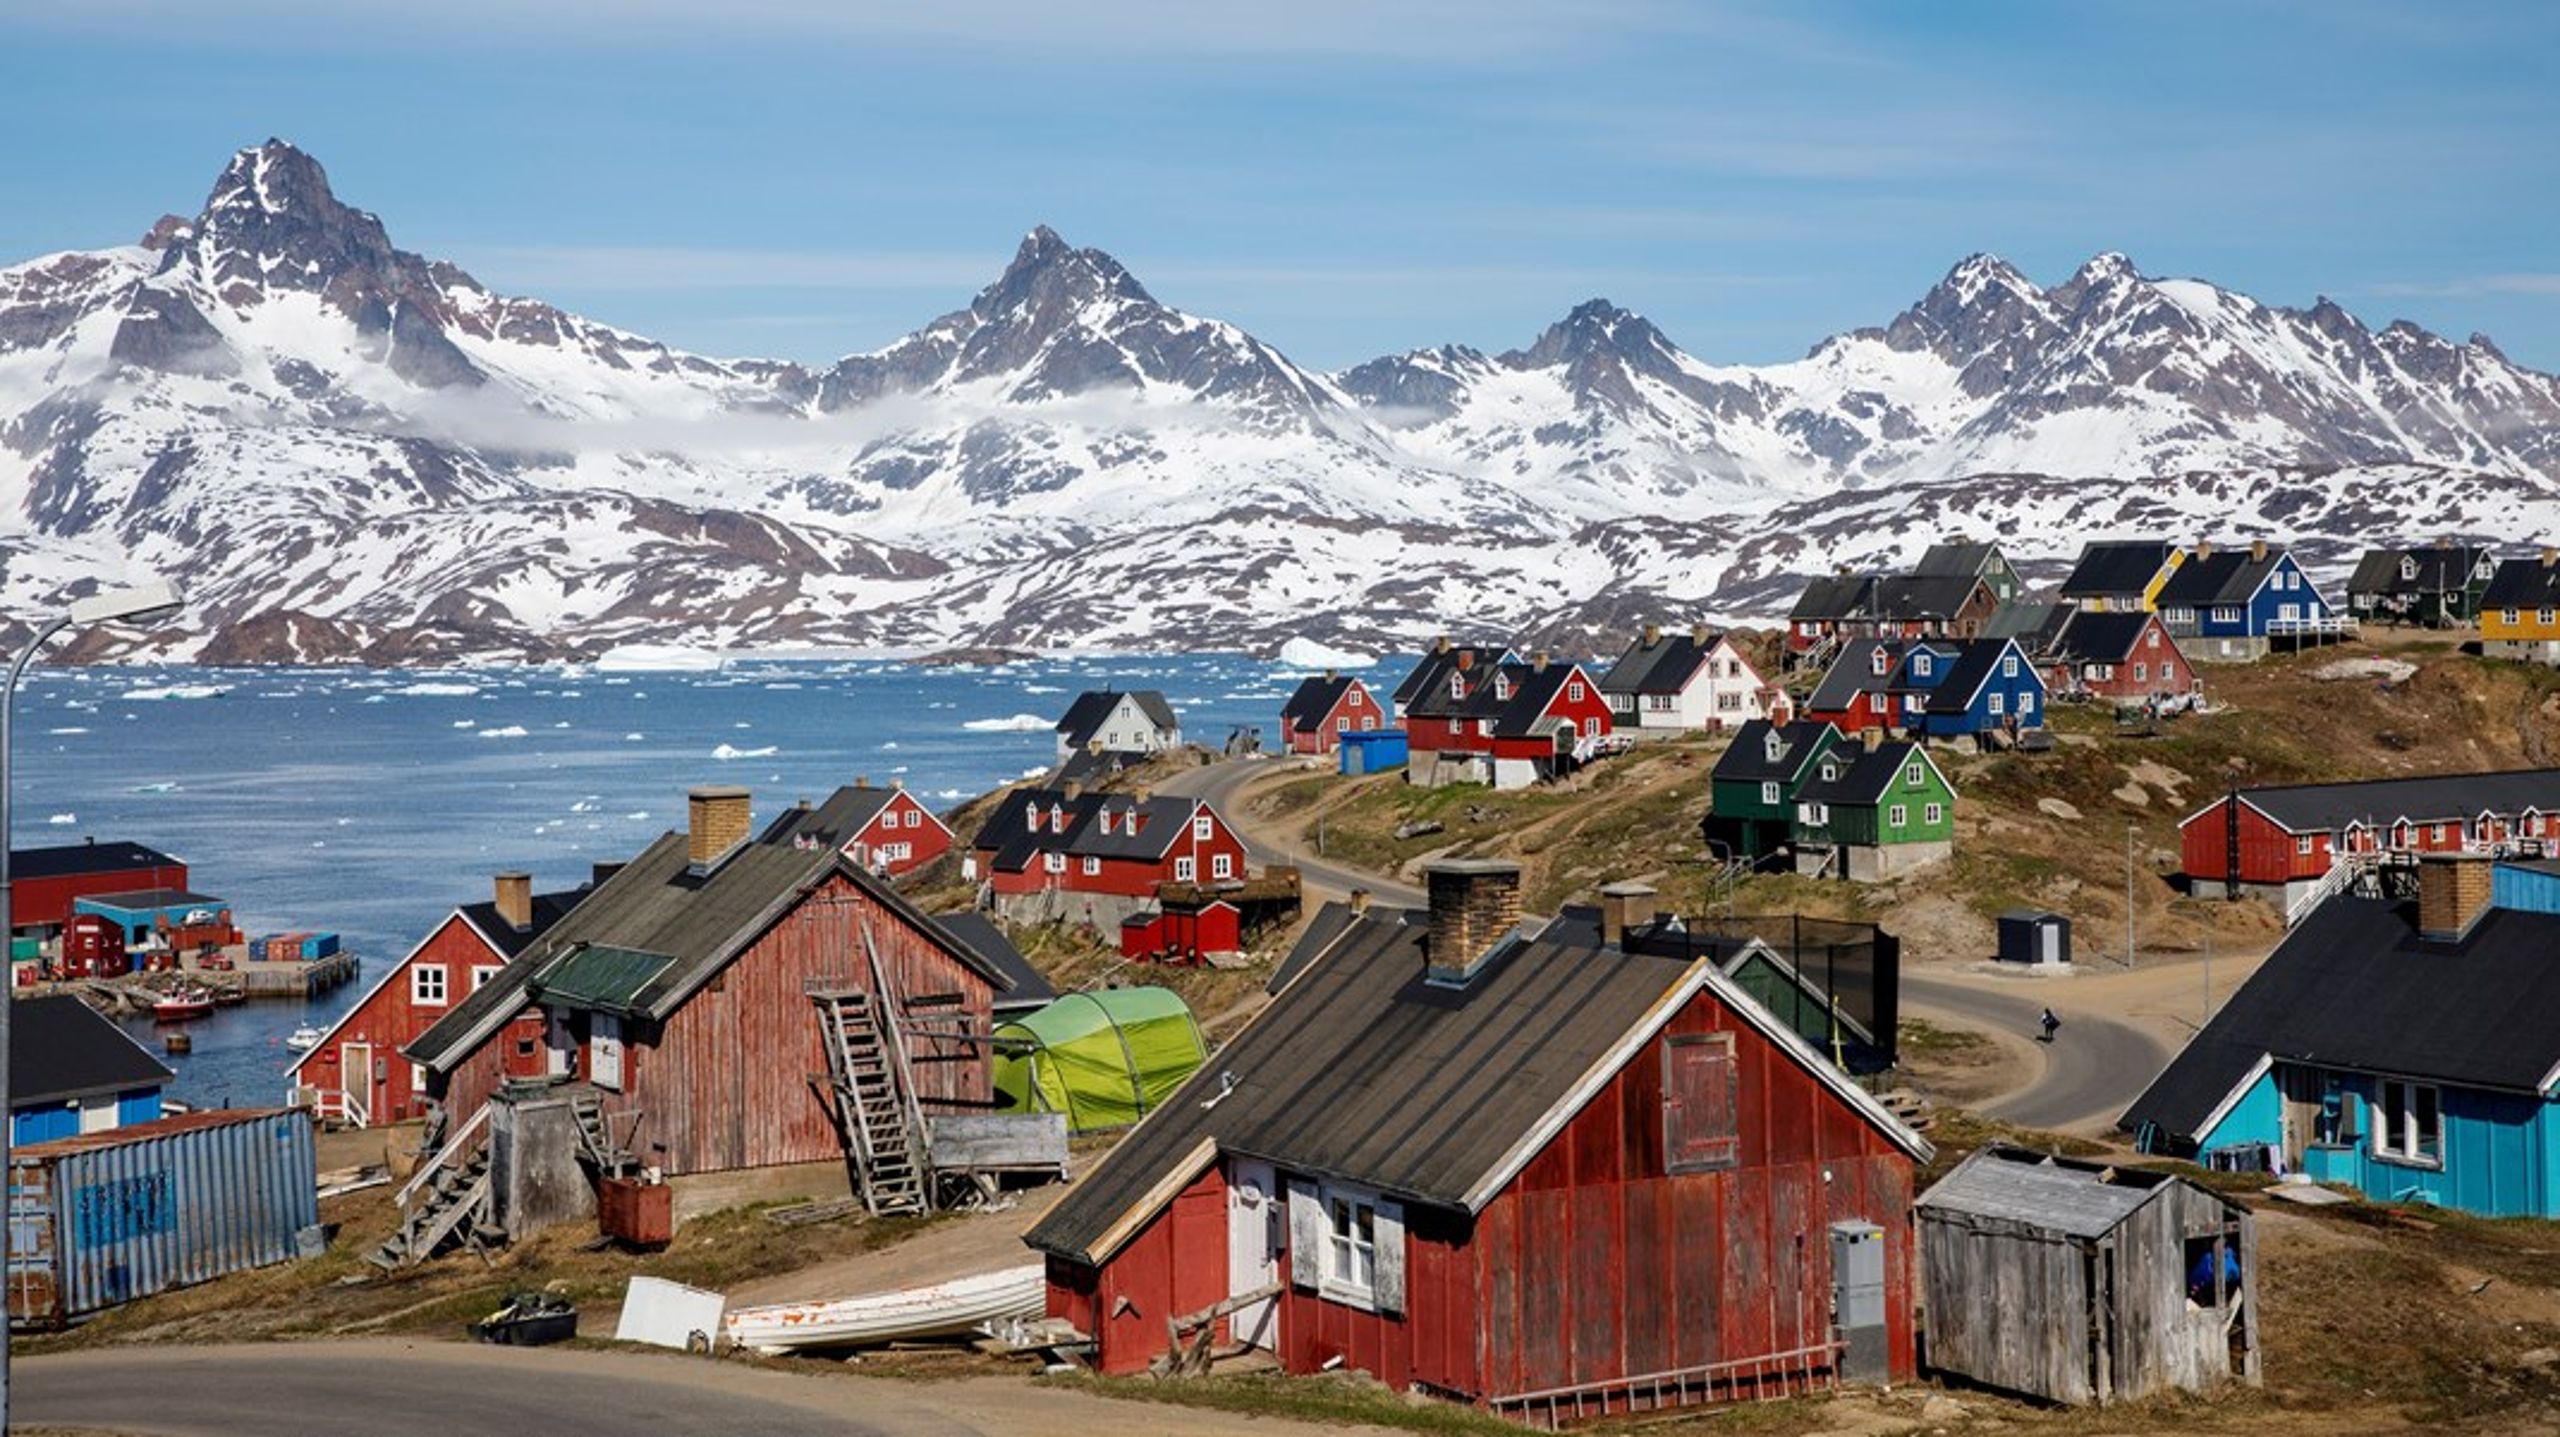 "Når man kradser lidt i overfladen, er det tydeligt, at den barske modernisering af Grønland&nbsp;i 1950’erne var motiveret af danske egeninteresser," skriver Anne Kirstine Hermann.